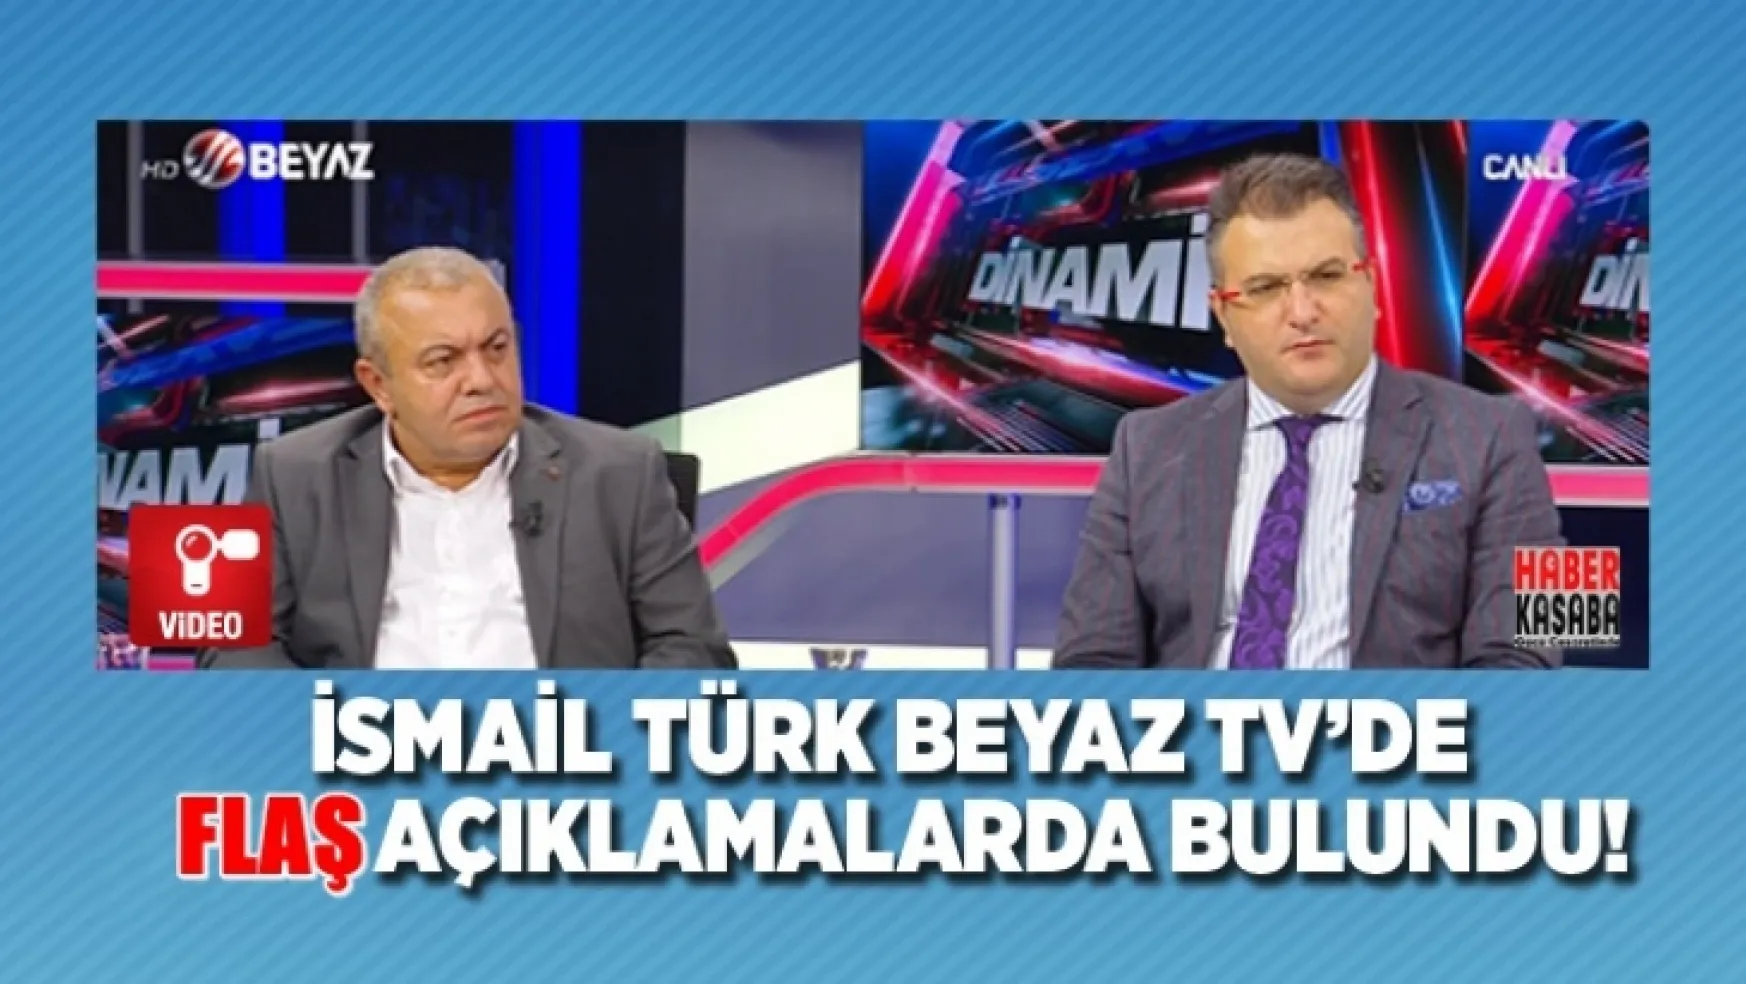 Beyaz TV'de İsmail Türk Flaş açıklamalarda bulundu!